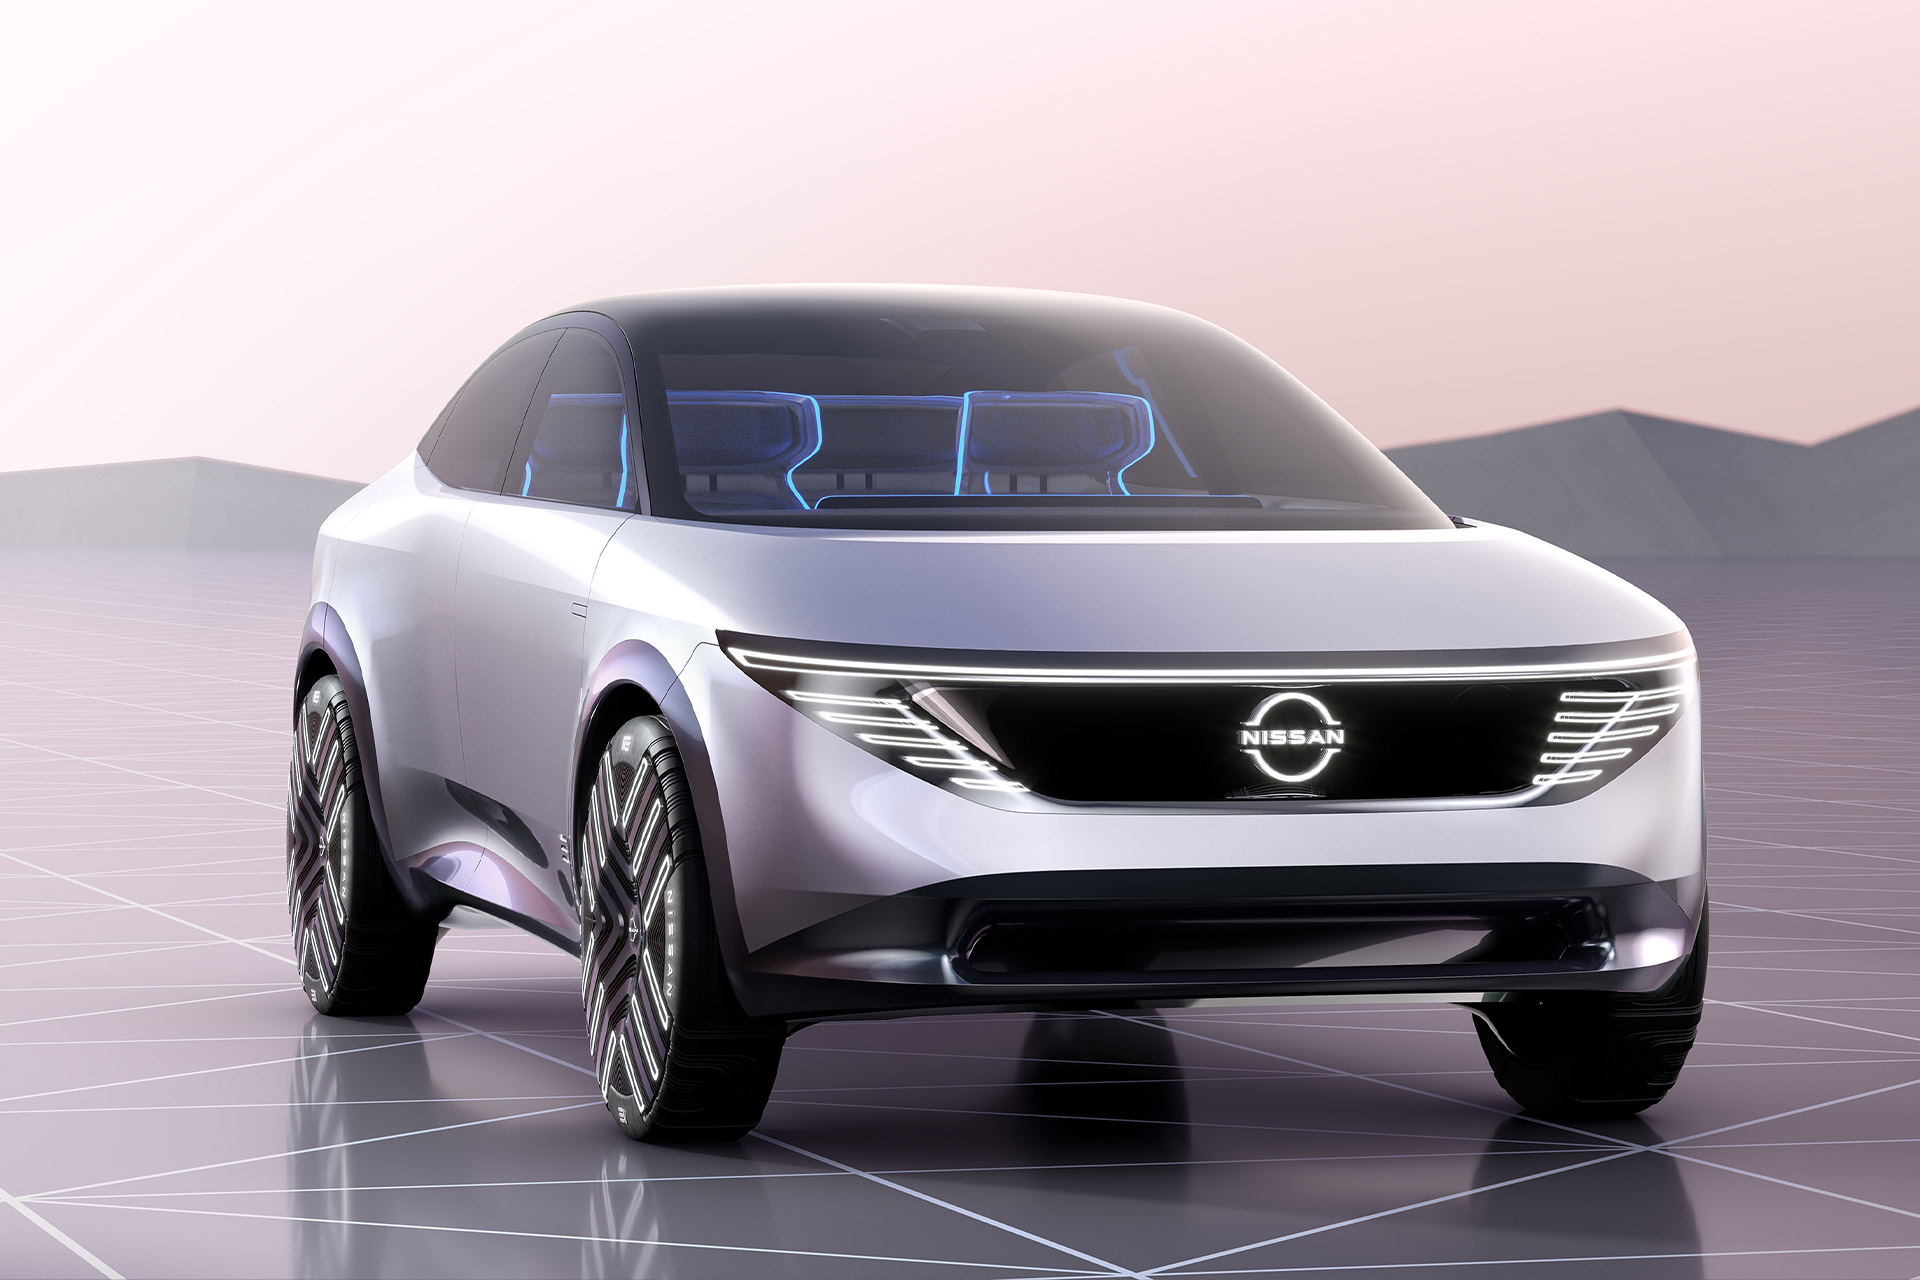 Концепт-кары Nissan Ambition 2030